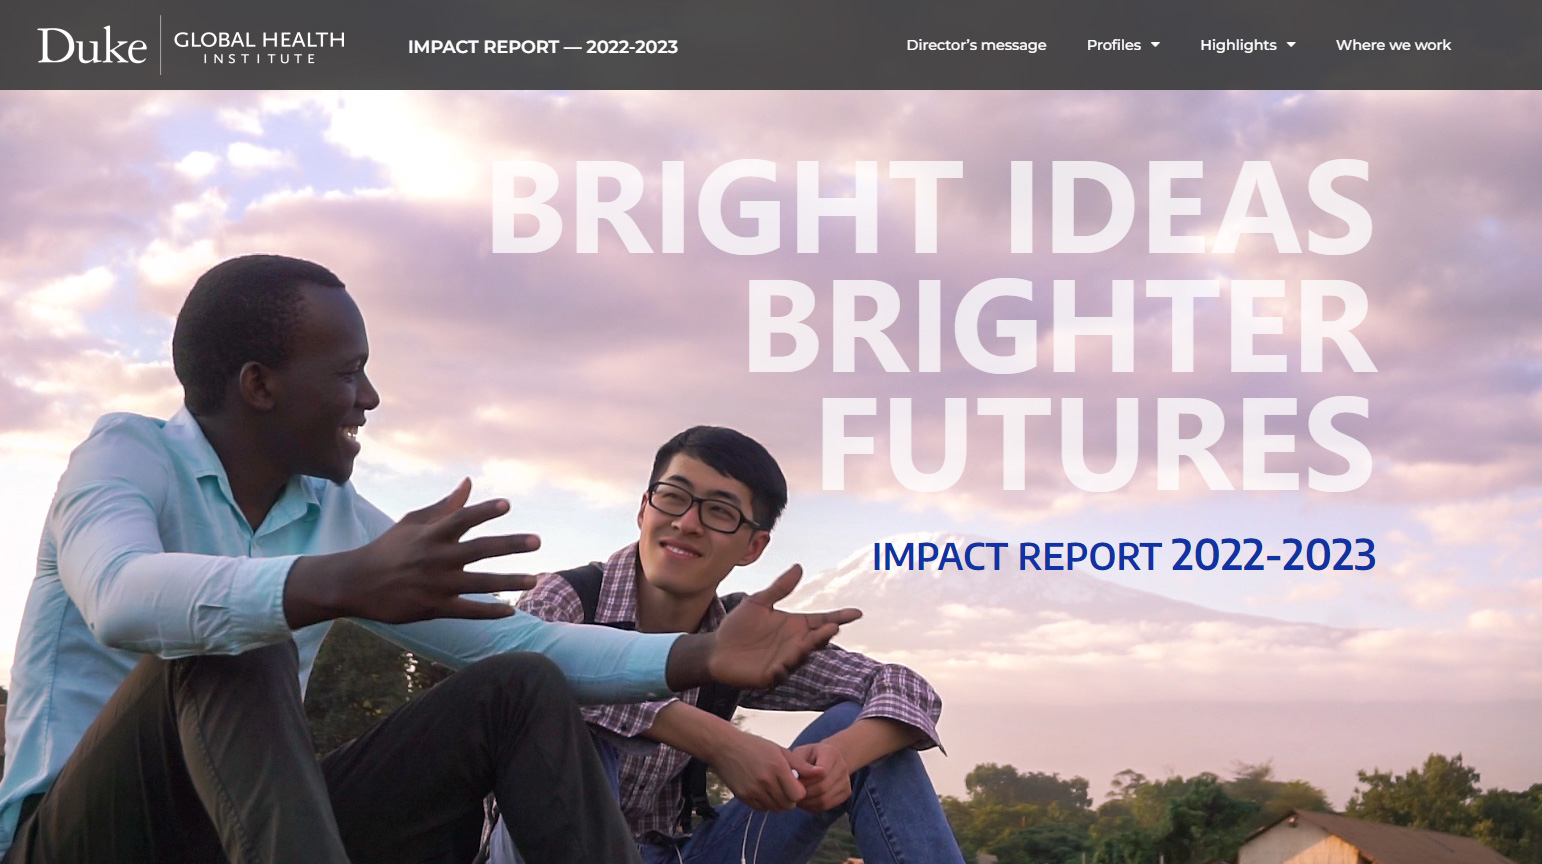 Bright Ideas, Brighter Futures - Impact Report 2022-2023